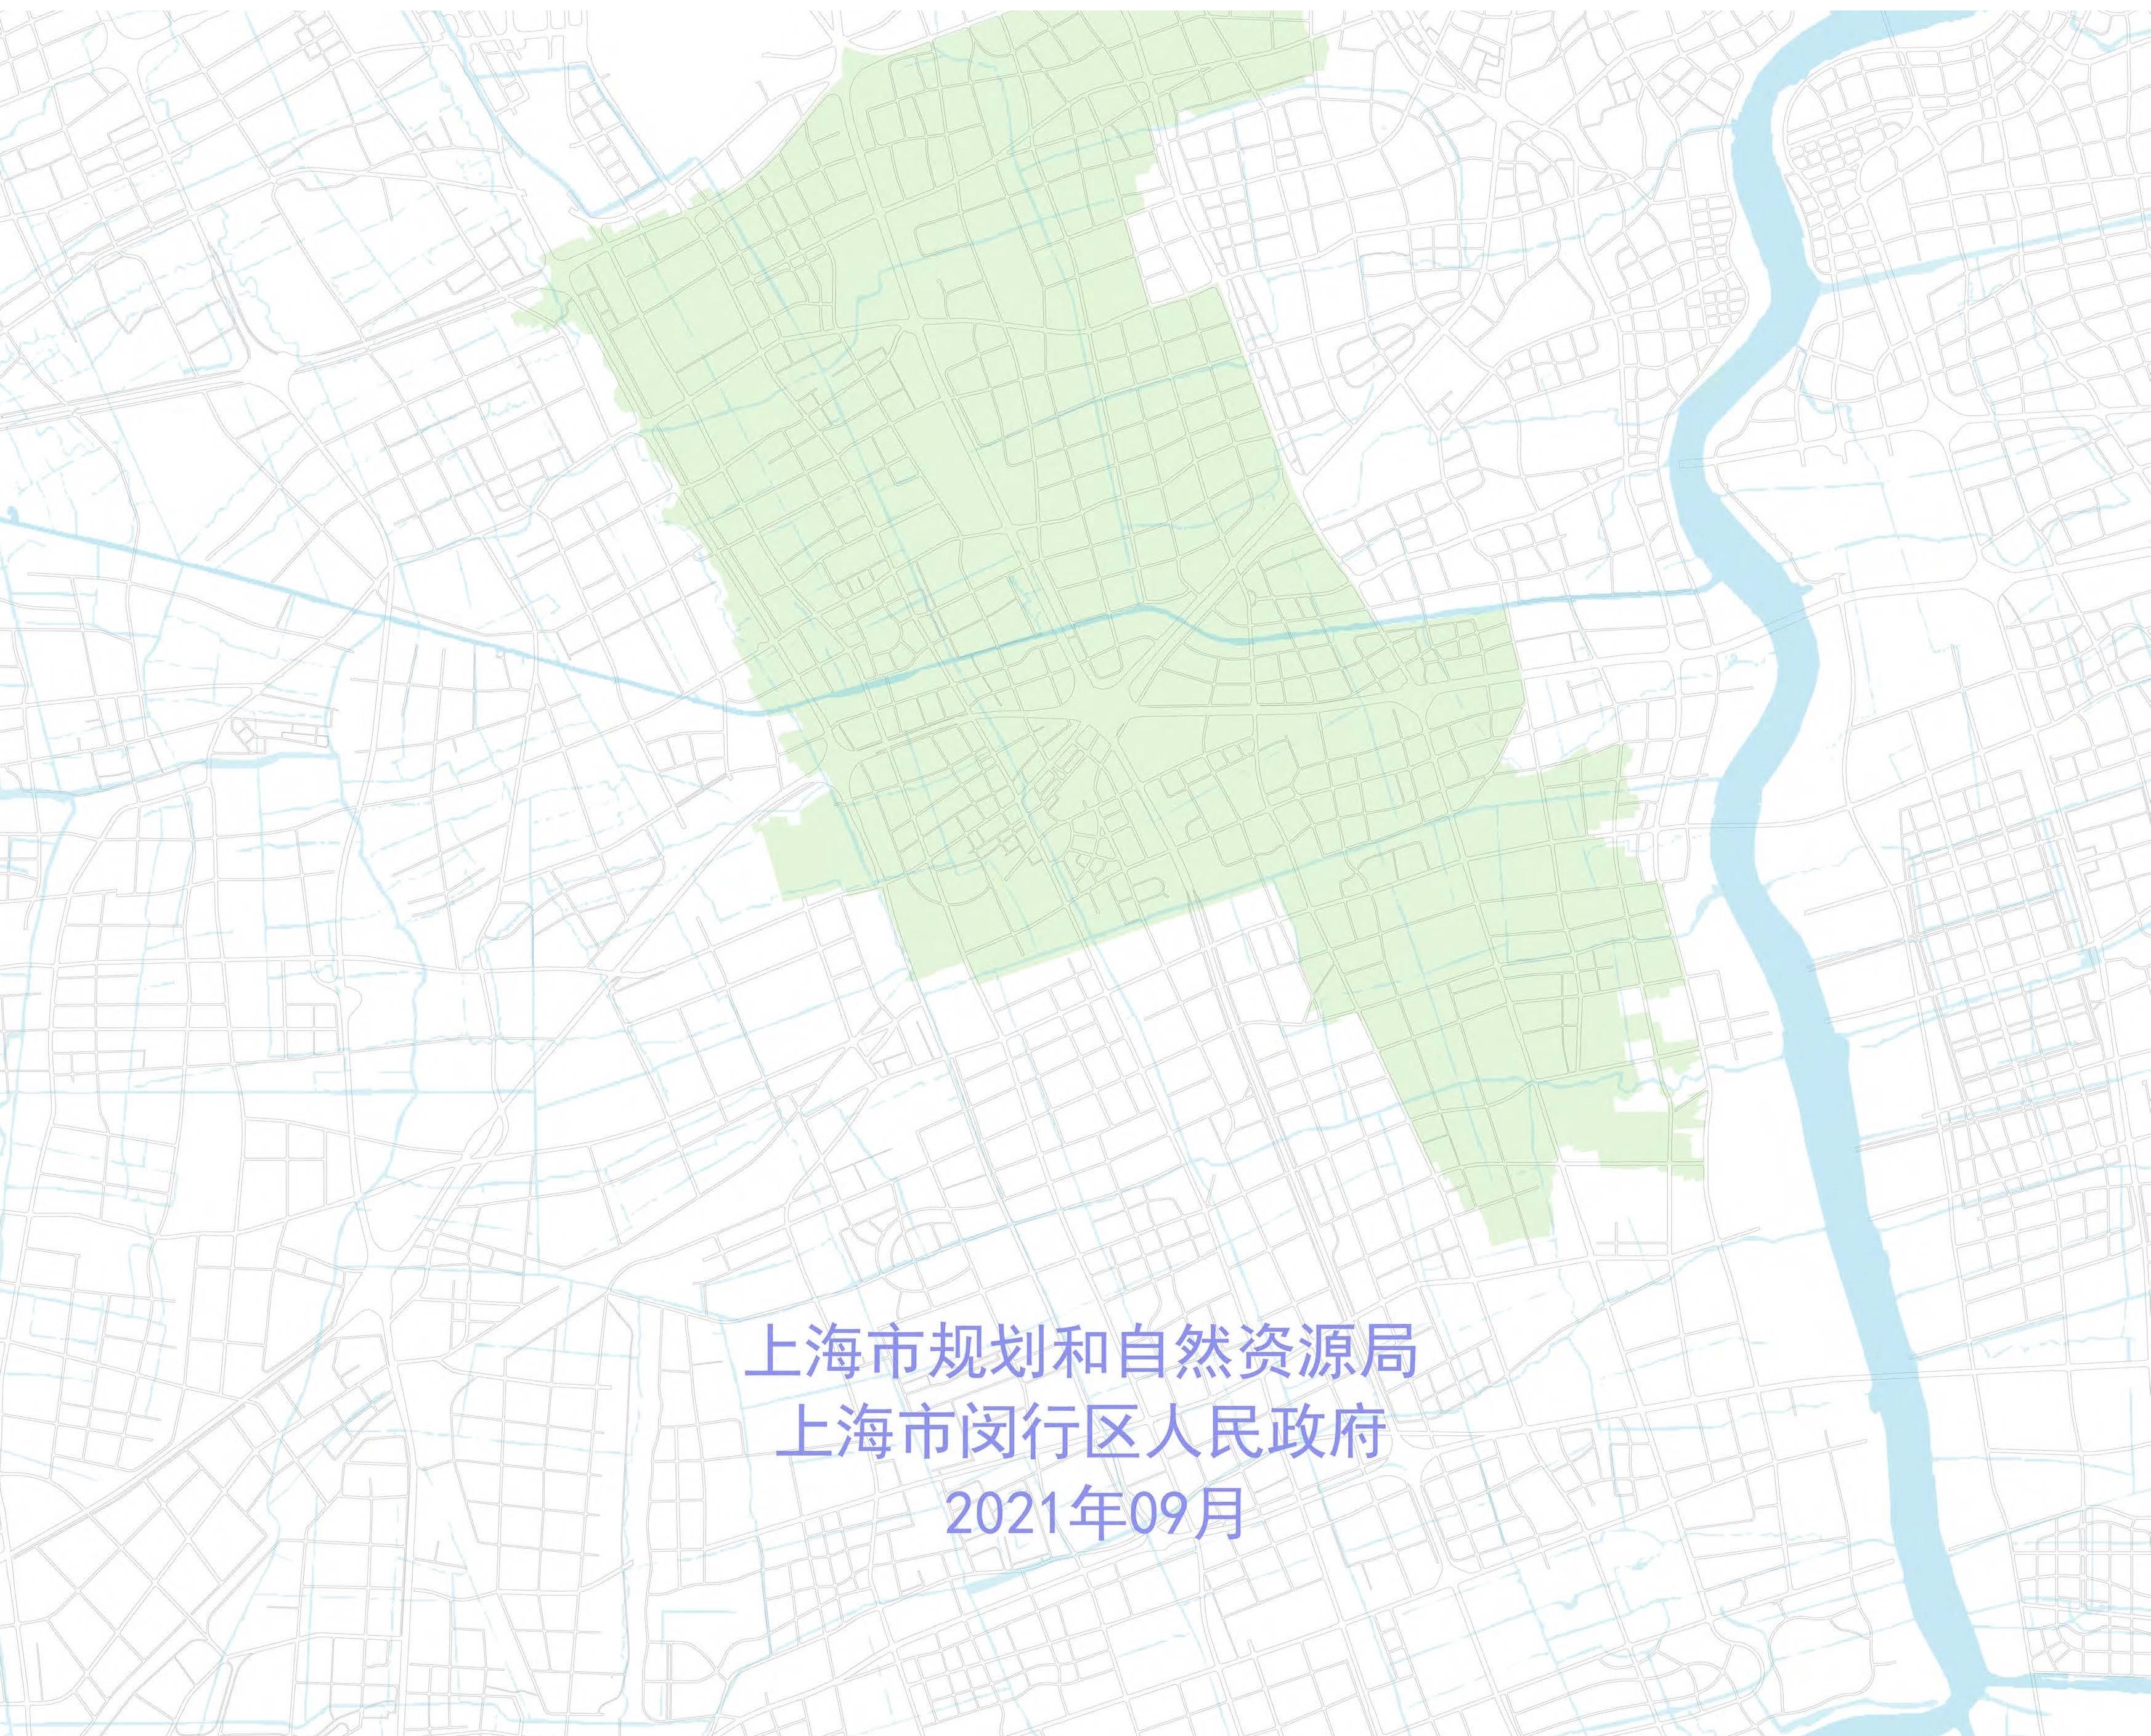 上海市闵行主城片区中部板块单元规划草案公示稿-草案公示公告1-2.jpg